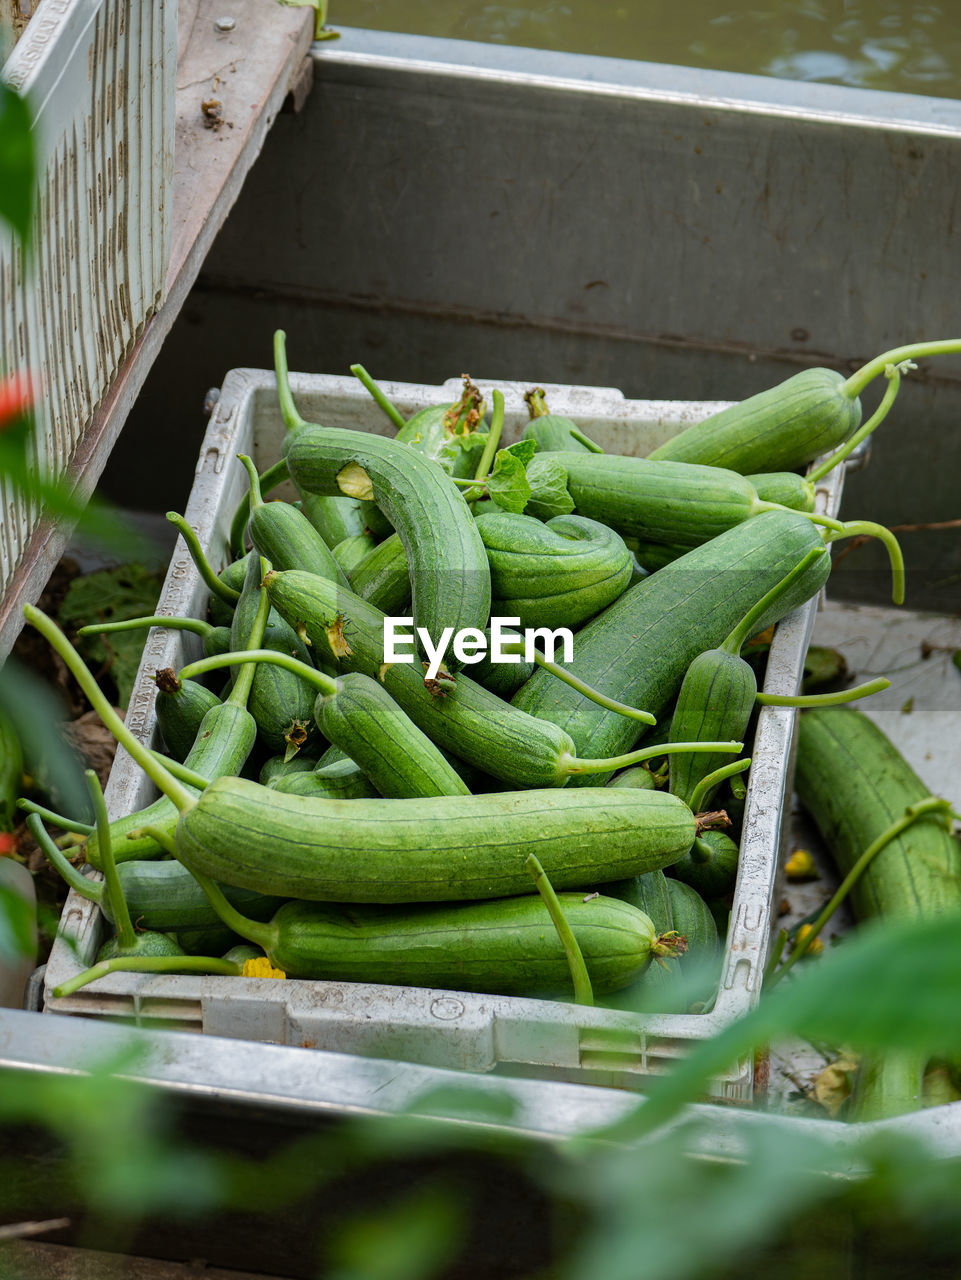 Photos of zucchini gardener lifestyle in thailand.